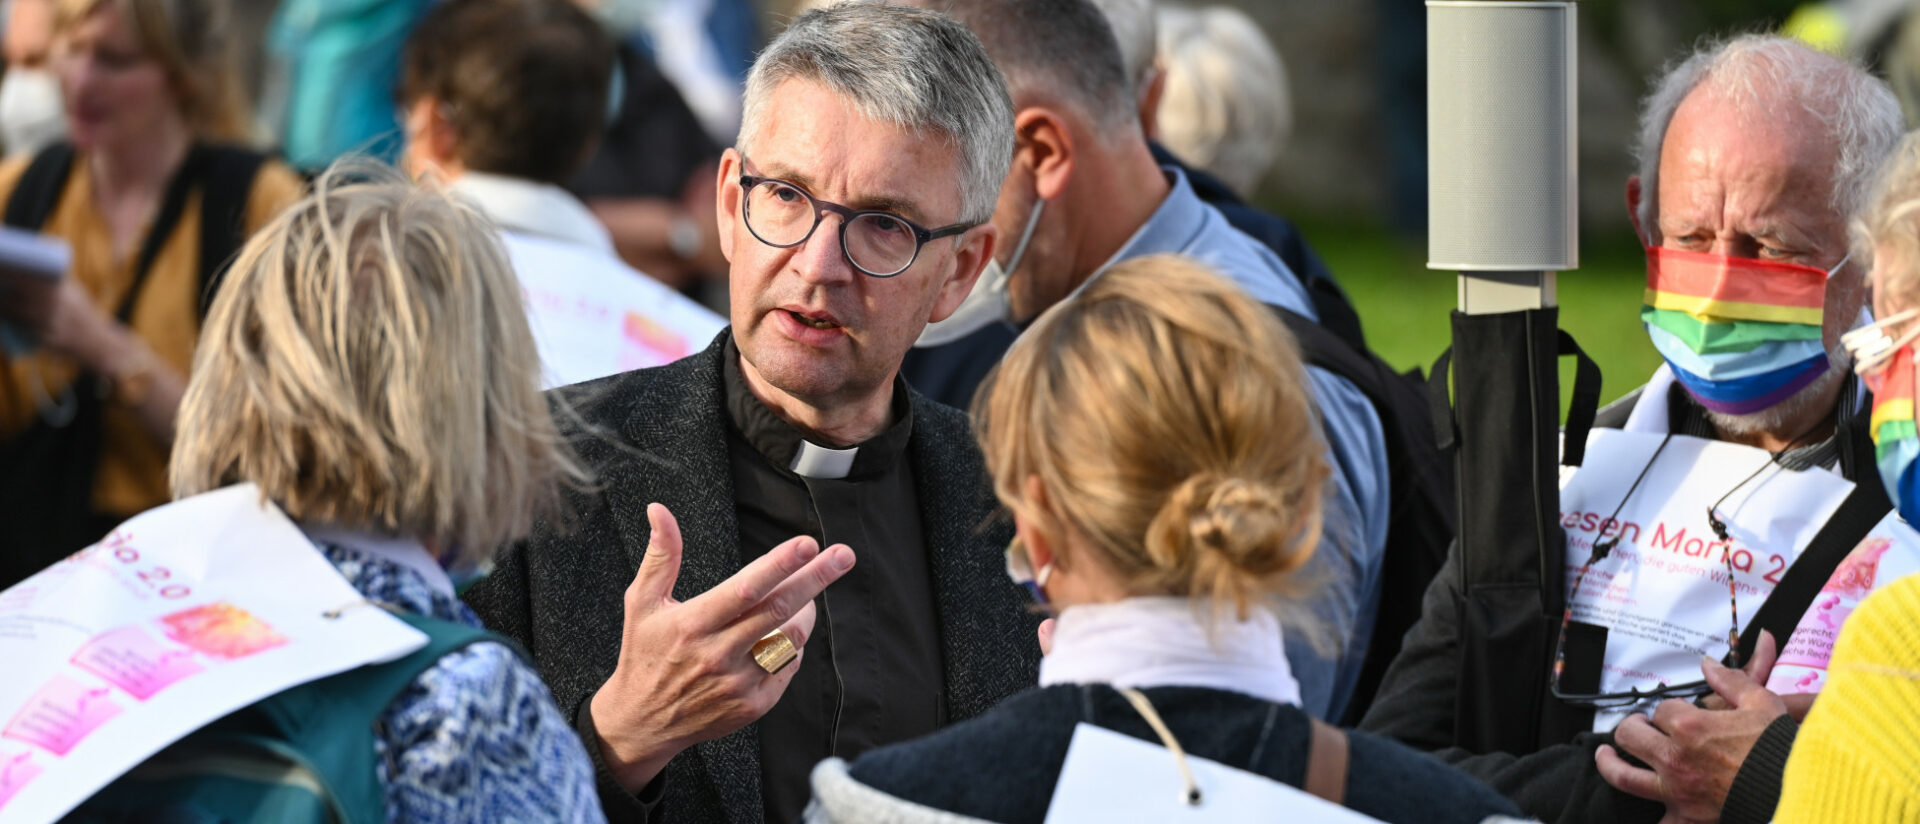 Peter Kohlgraf, Bischof von Mainz, im Gespräch bei einer Demonstration der kirchlichen Protestinitiative Maria 2.0., 2021